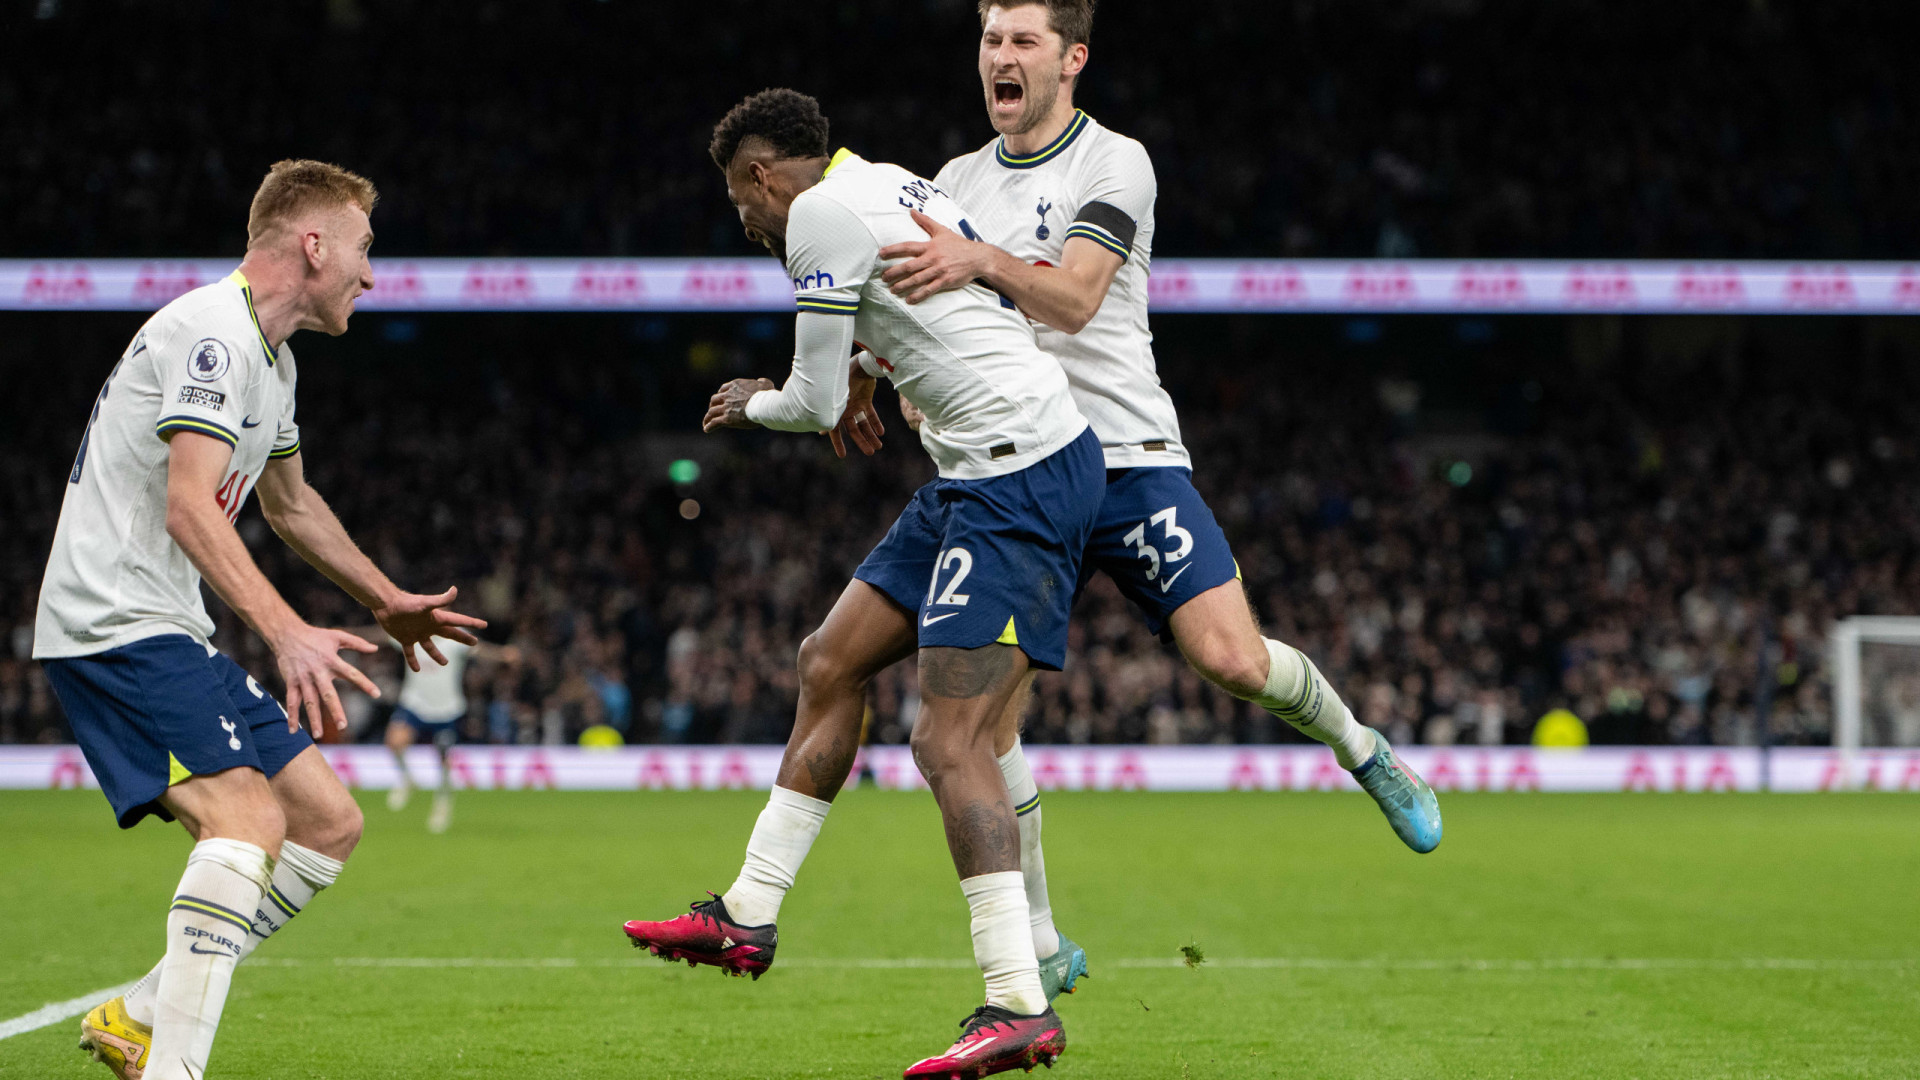 Tottenham vence clássico quente contra o Chelsea e afunda rival